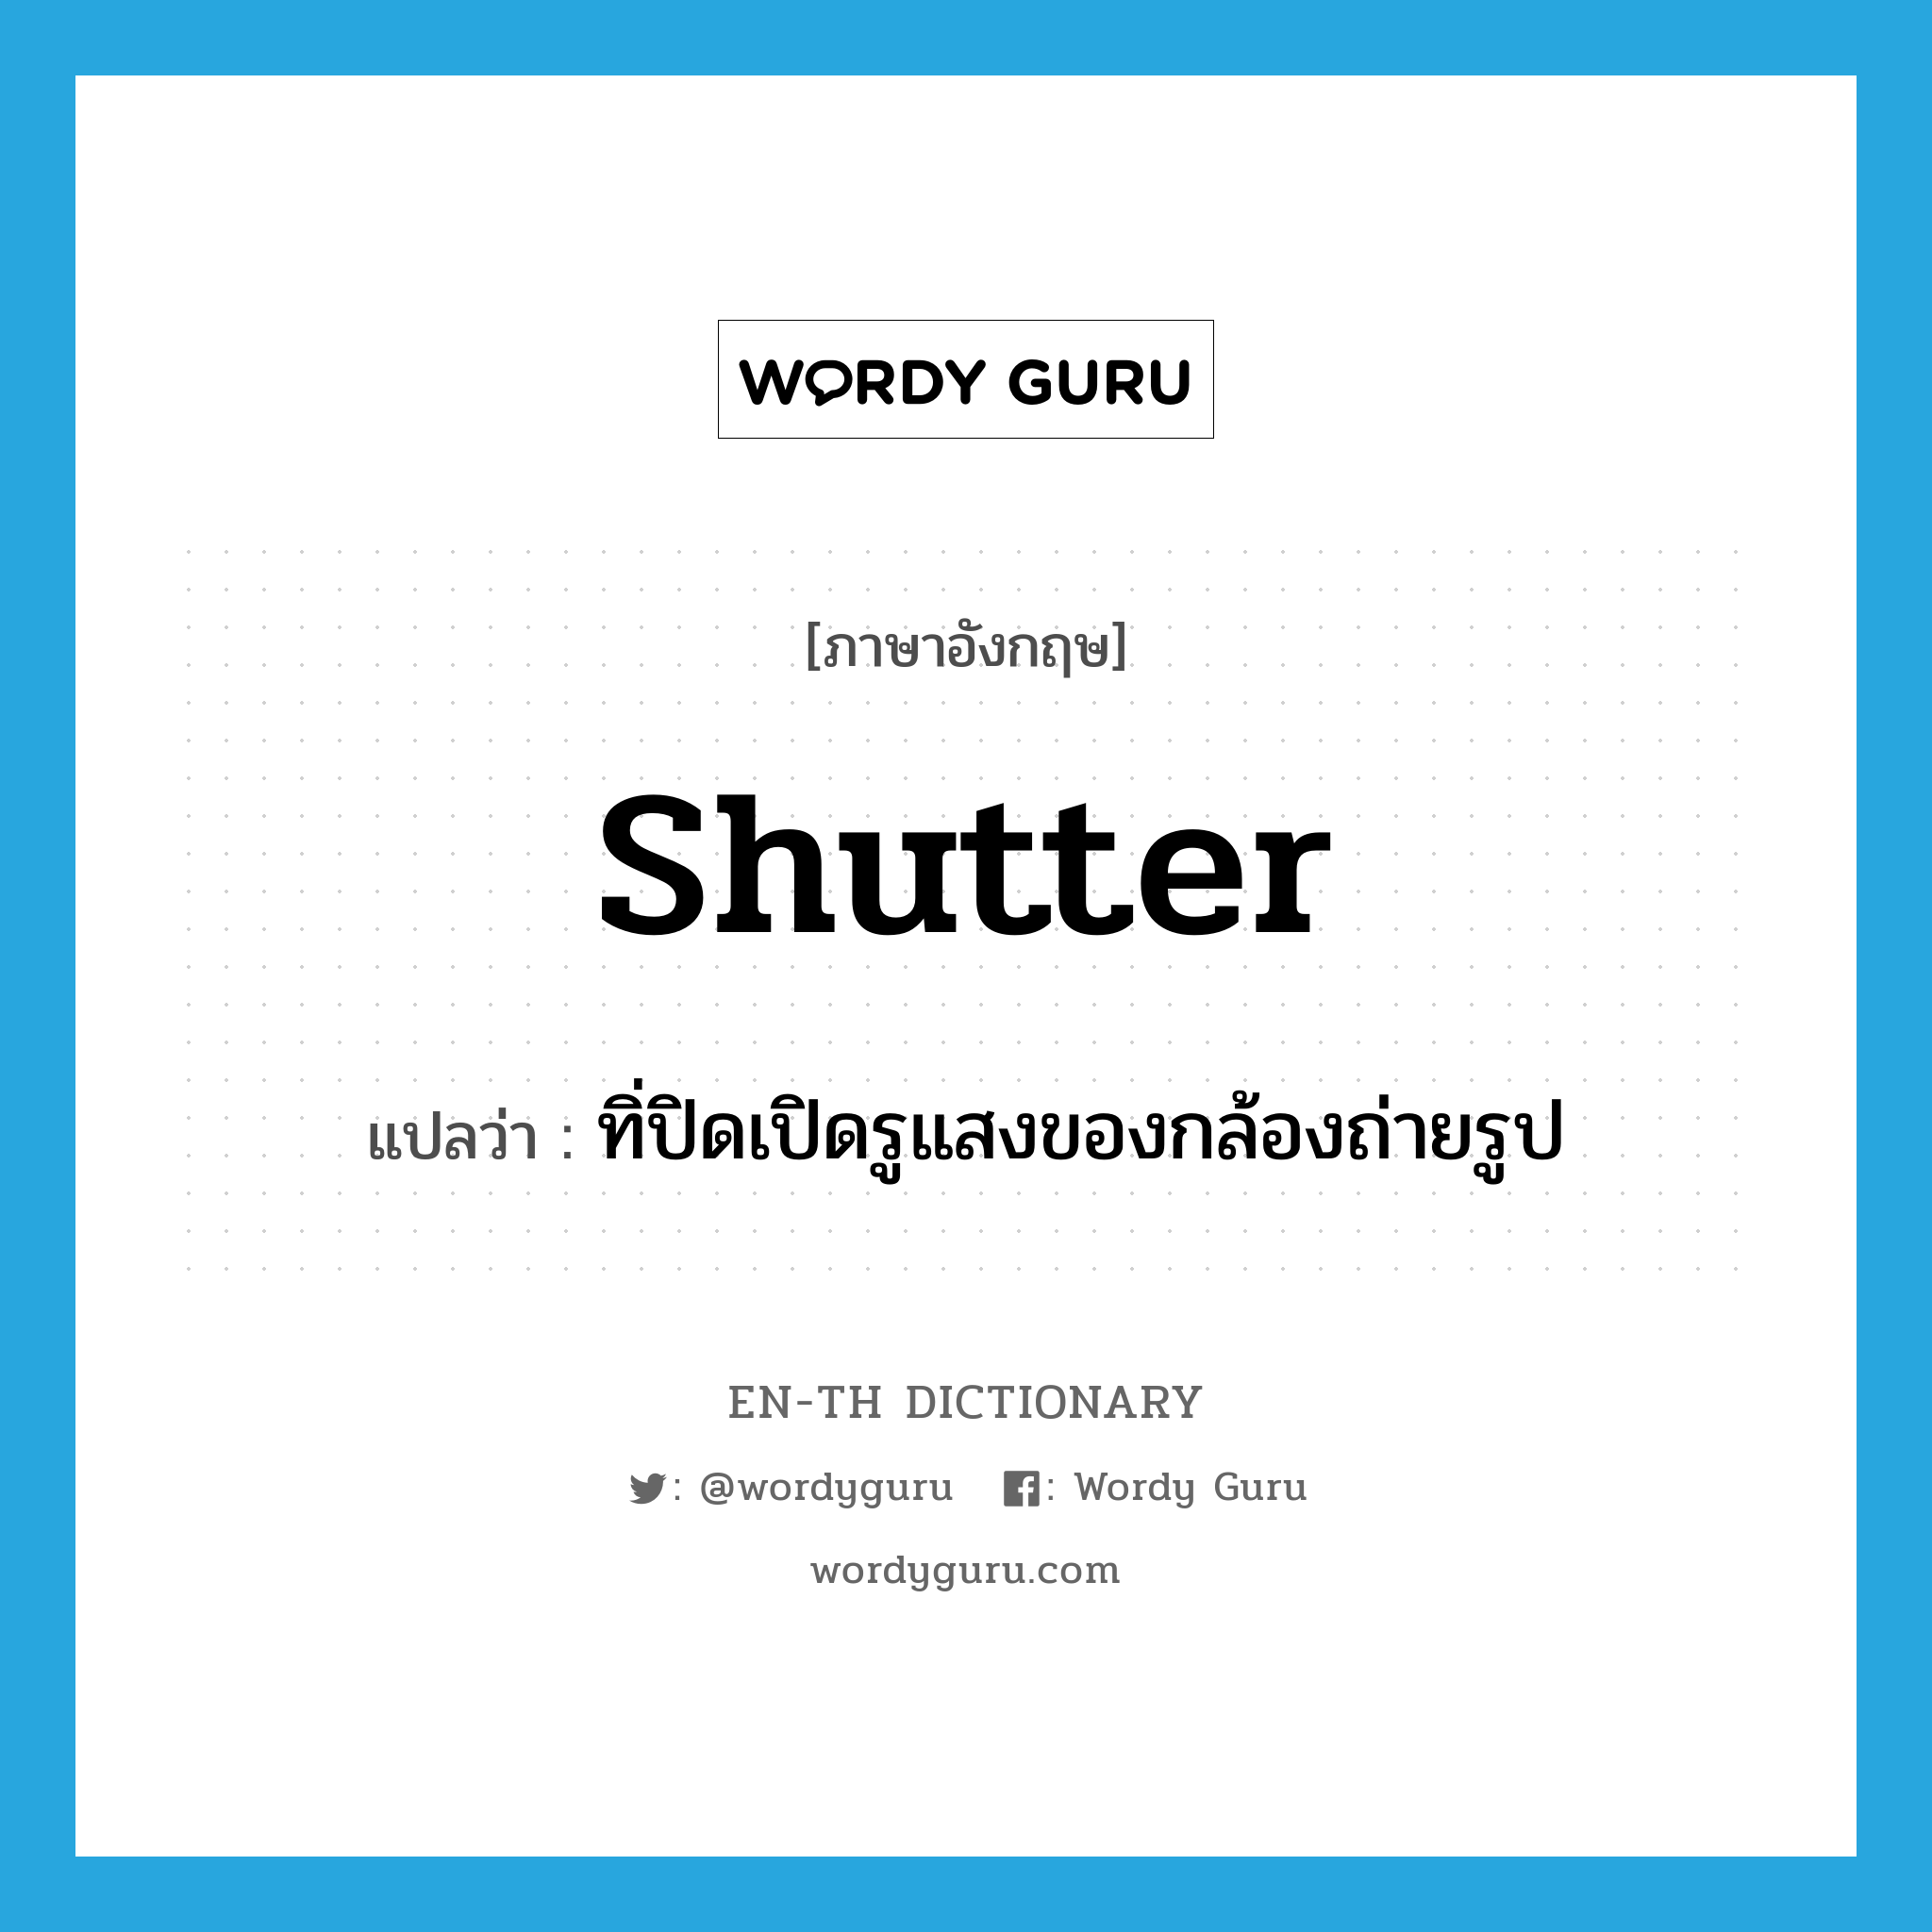 shutter แปลว่า?, คำศัพท์ภาษาอังกฤษ shutter แปลว่า ทิ่ปิดเปิดรูแสงของกล้องถ่ายรูป ประเภท N หมวด N